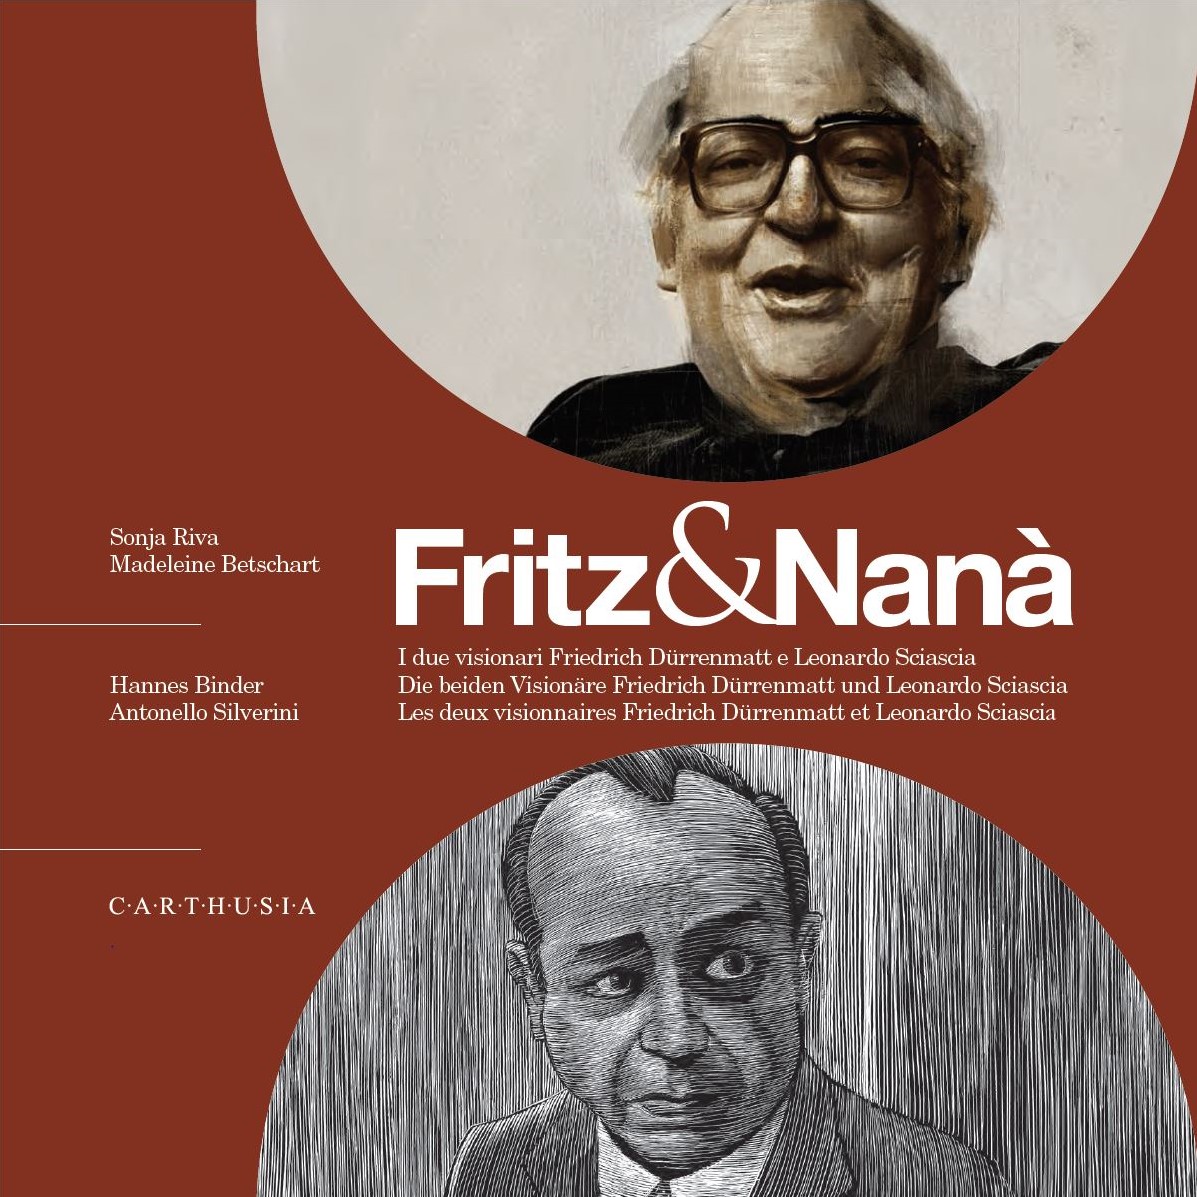 Fritz & Nanà